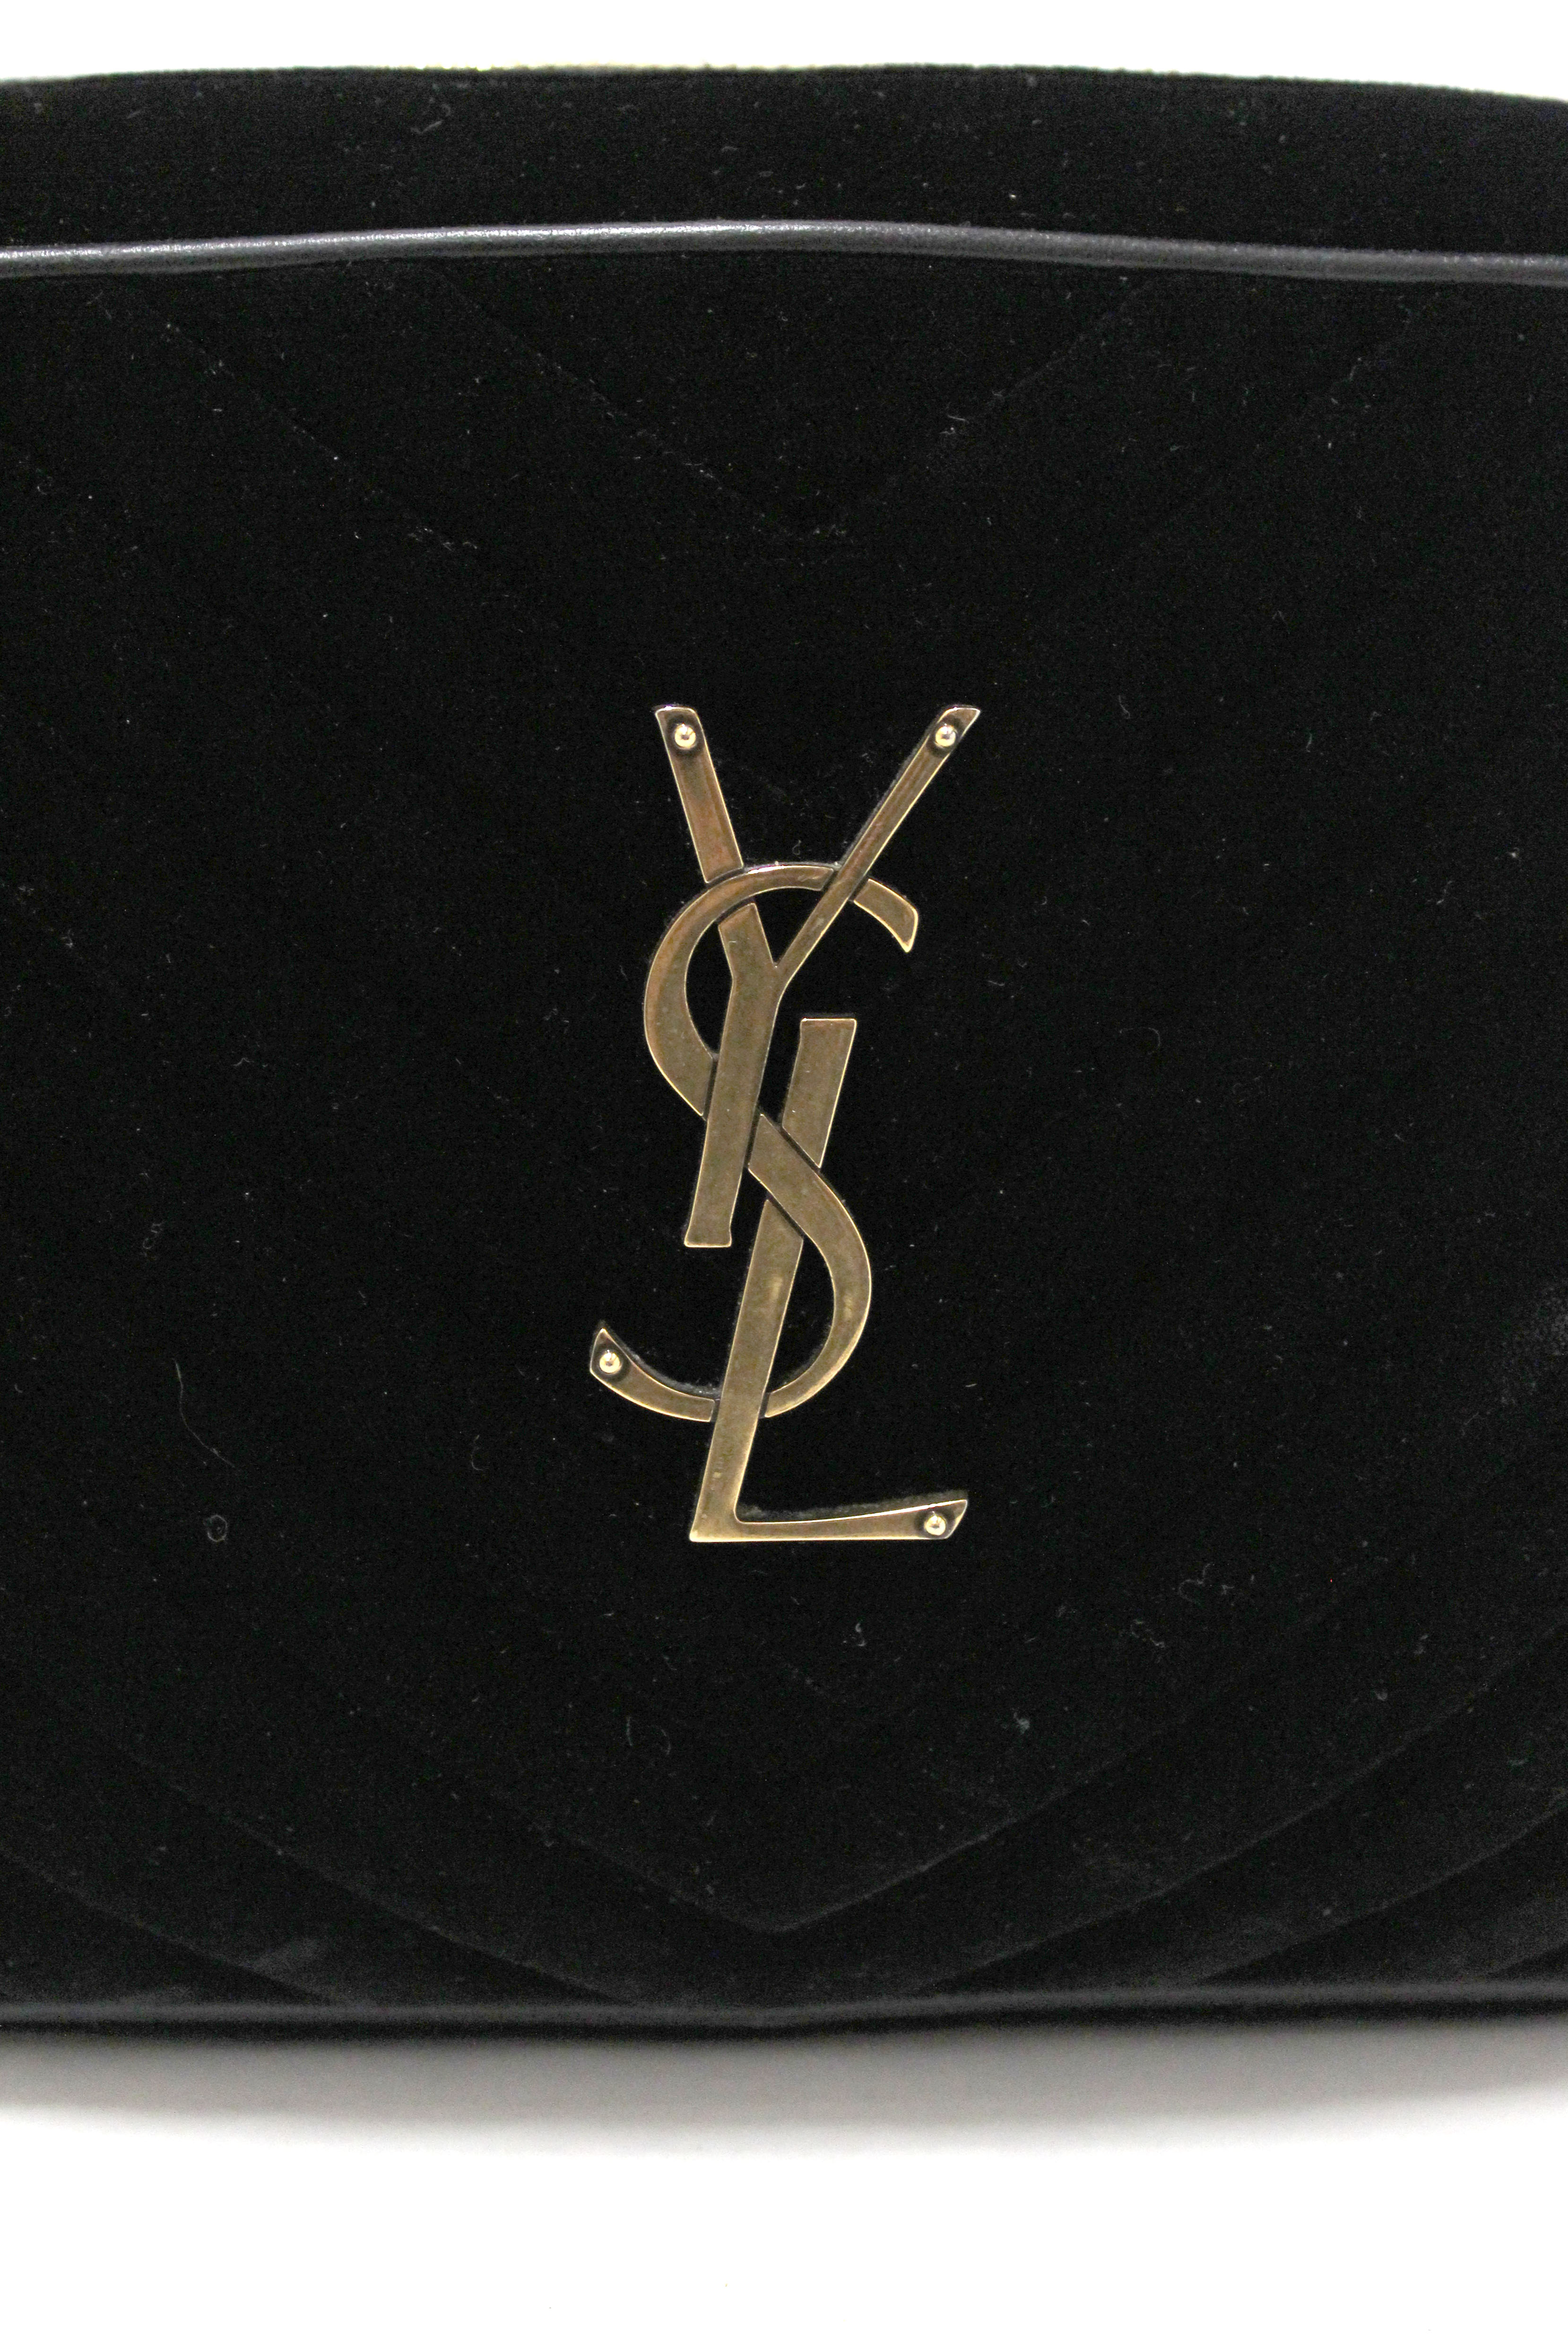 Bag Versus: Louis Vuitton, Dior and Saint Laurent Chain Wallets